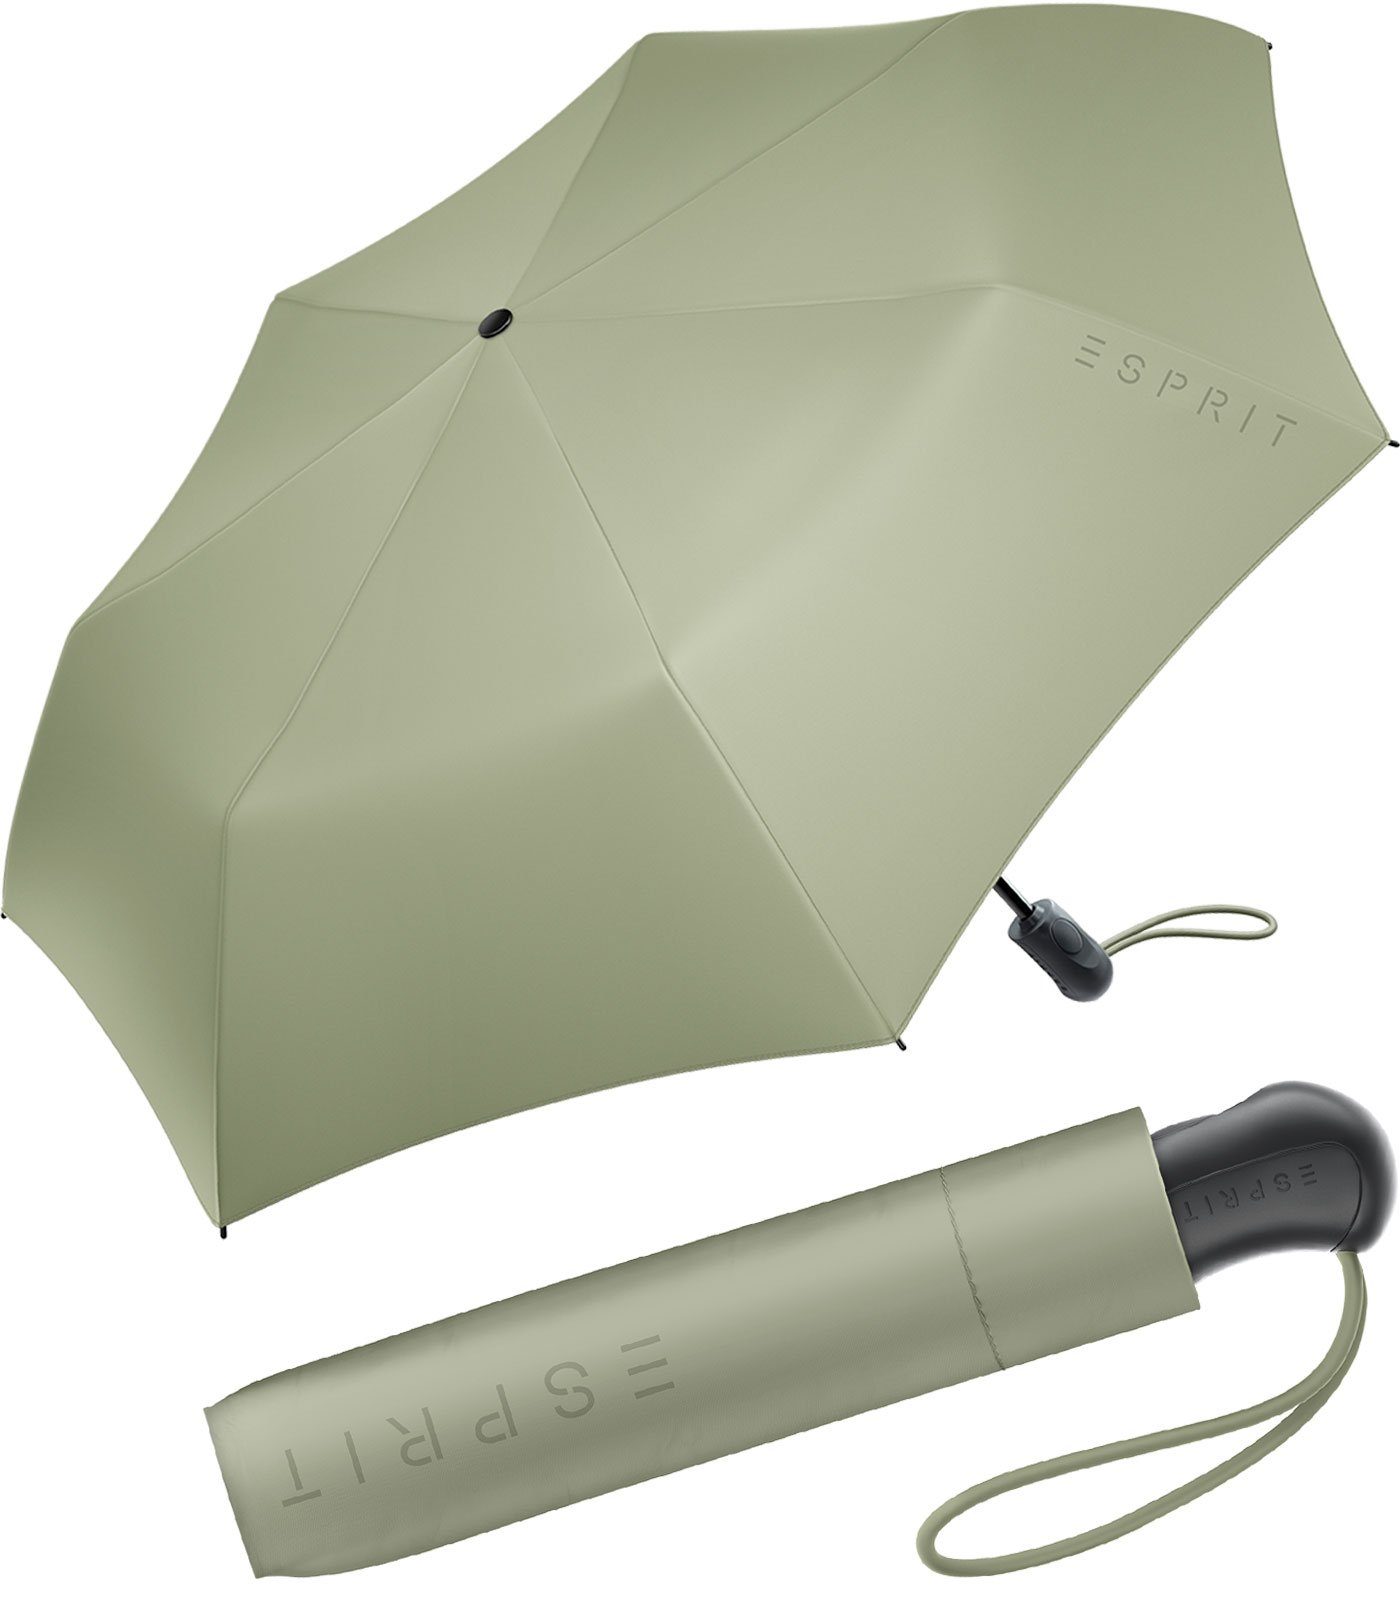 Esprit Taschenregenschirm Damen Easymatic Light Auf-Zu Automatik FJ 2022, stabil und praktisch, in den neuen Trendfarben olive